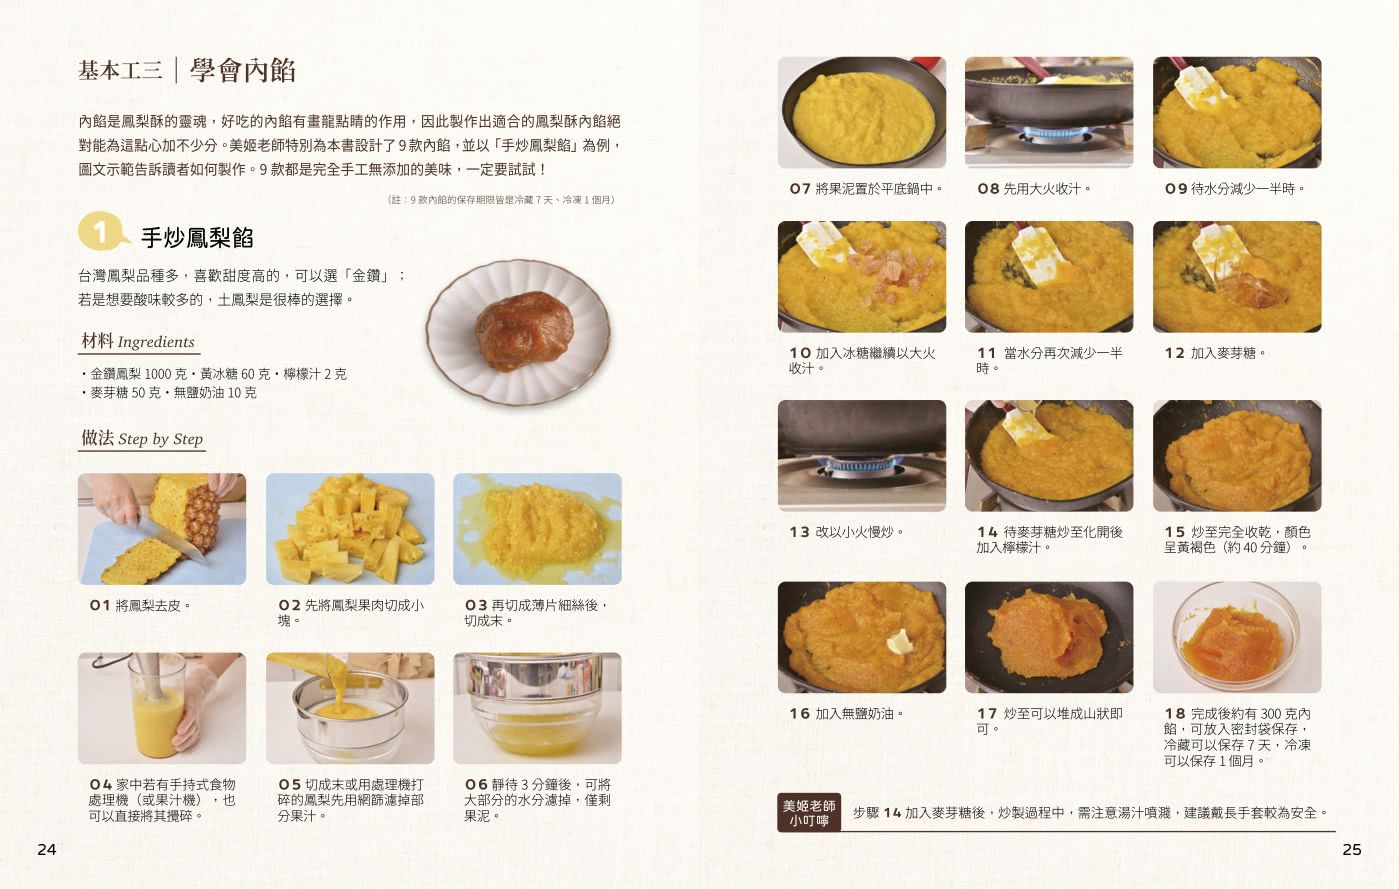 卡哇伊造型鳳梨酥：黃金比例塔皮與內餡 口感酥香超涮嘴；易捏好塑形、烤後不走樣、運送不脫落；